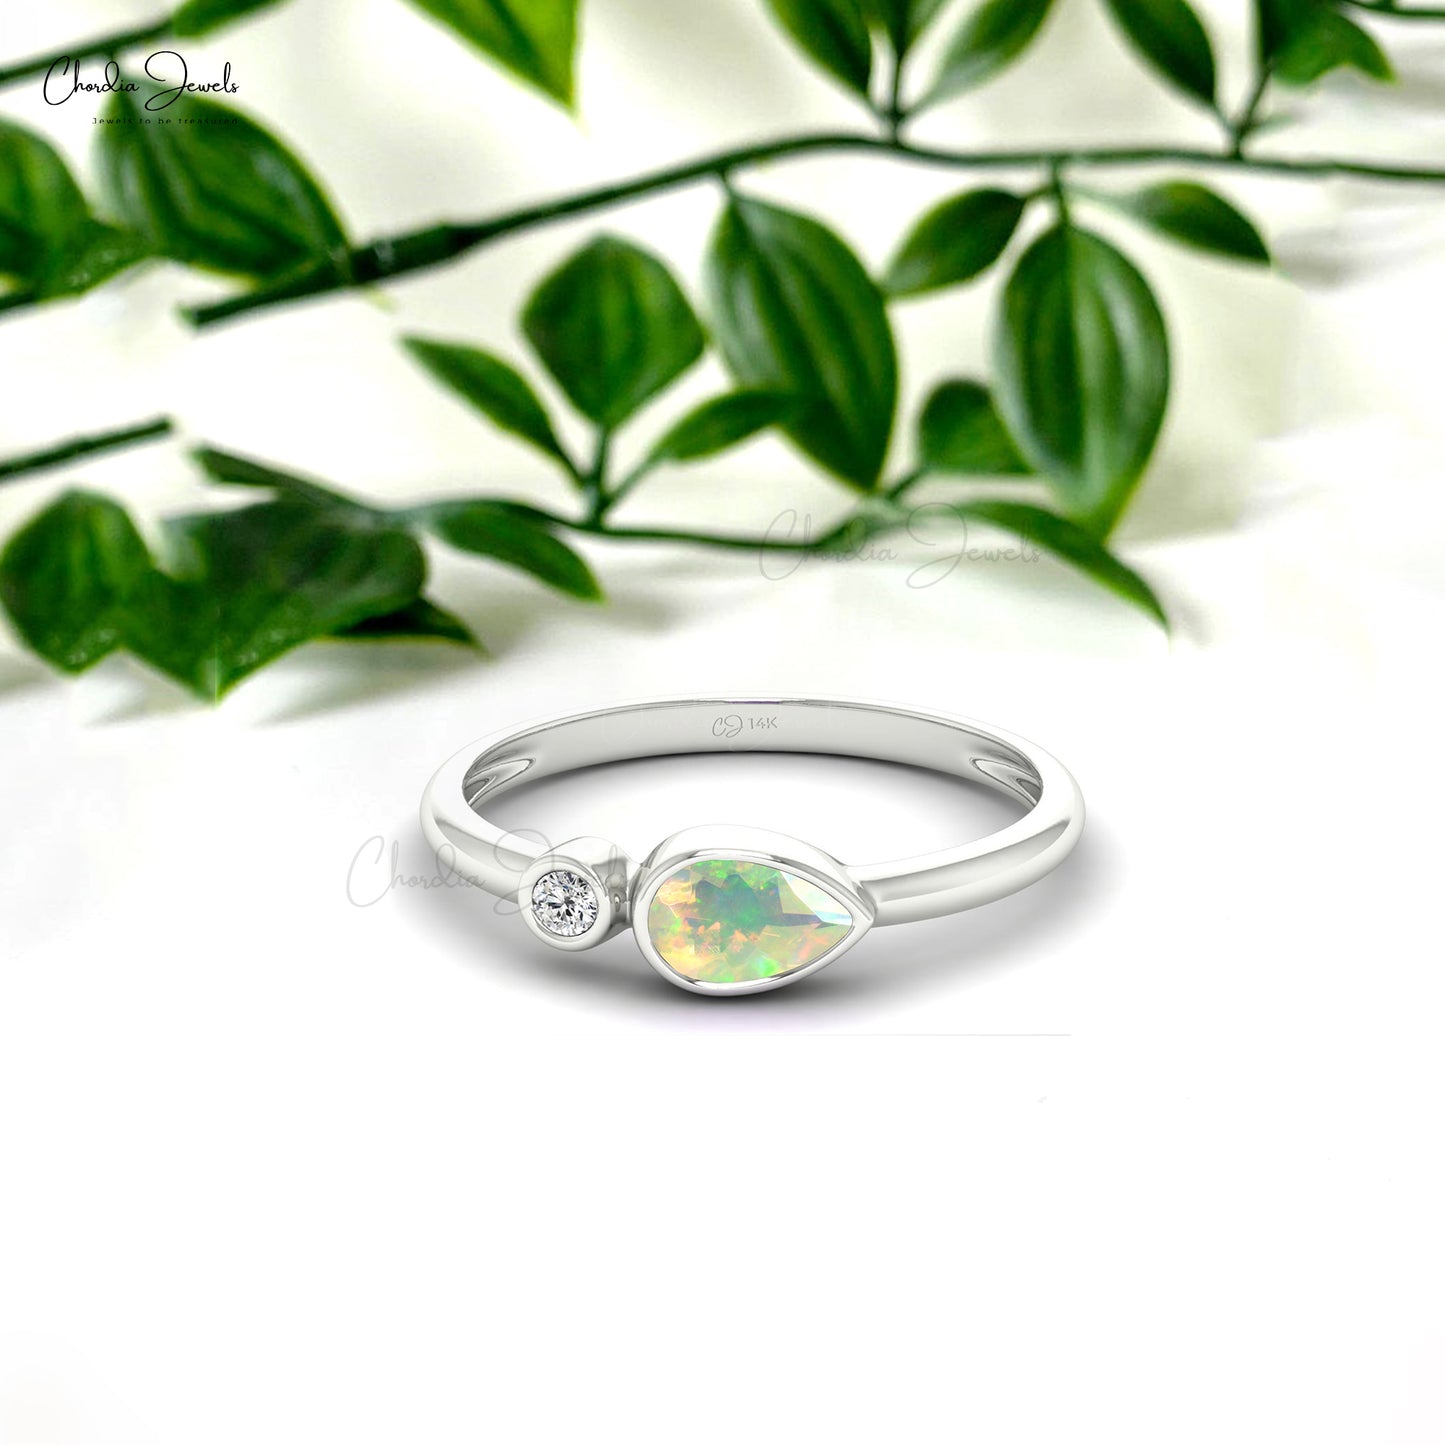 Genuine Ethiopian Opal Dainty Diamond Ring 14k Real Gold 6x4mm Pear Cut Gemstone Minimalist Ring For Birthday Gift